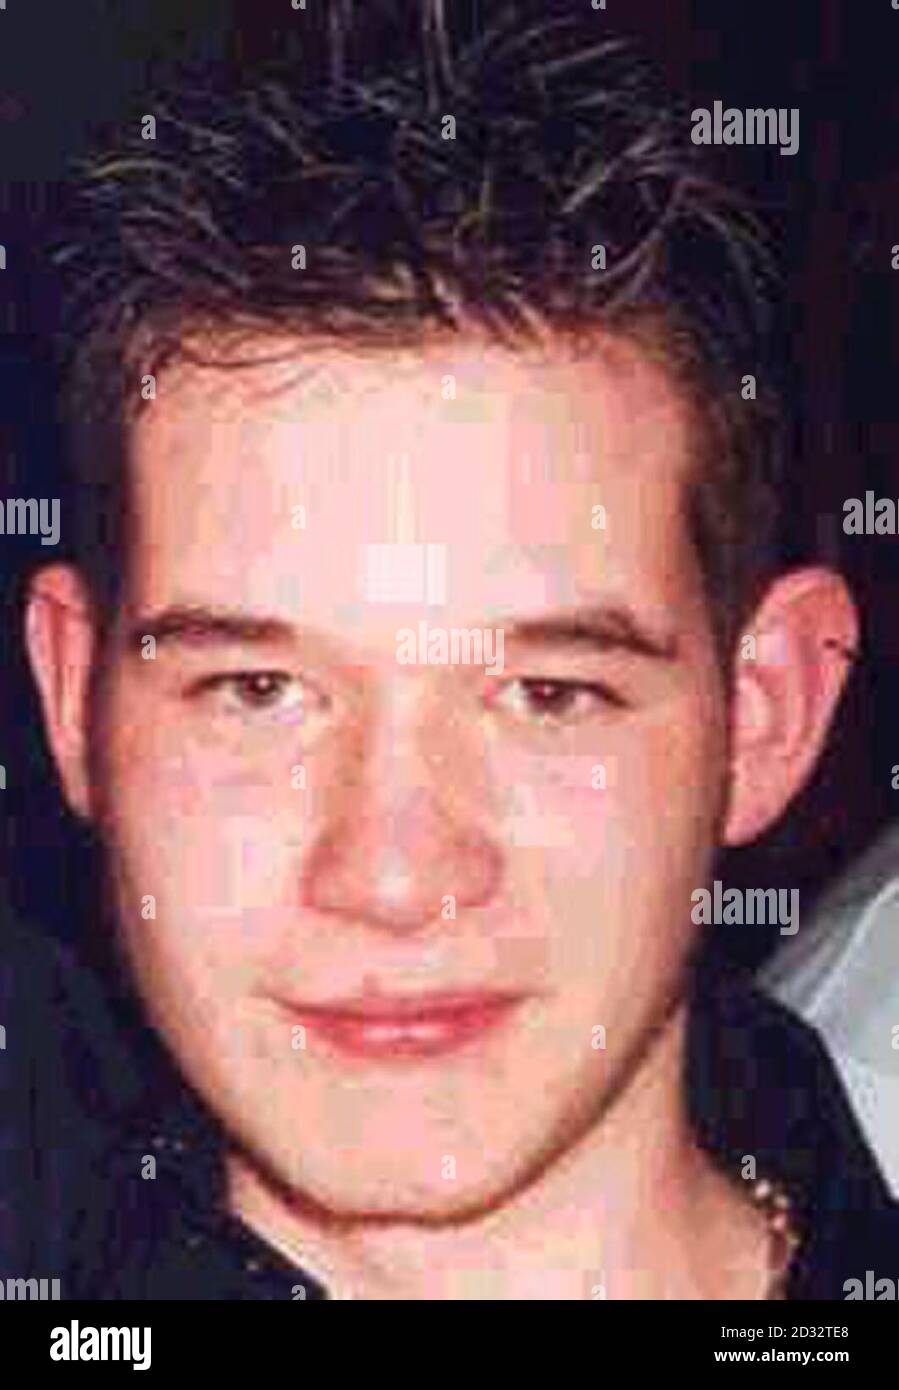 Underated Collect immagine del teenager Aidan Botfield, da Droitwich, che è stato trovato morto in una fogna profonda 15 piedi. Il corpo dello studente di 18 anni è stato recuperato da vigili del fuoco da una pompiera derelict accanto al fiume Severn, a Worcester, il venerdì. Foto Stock